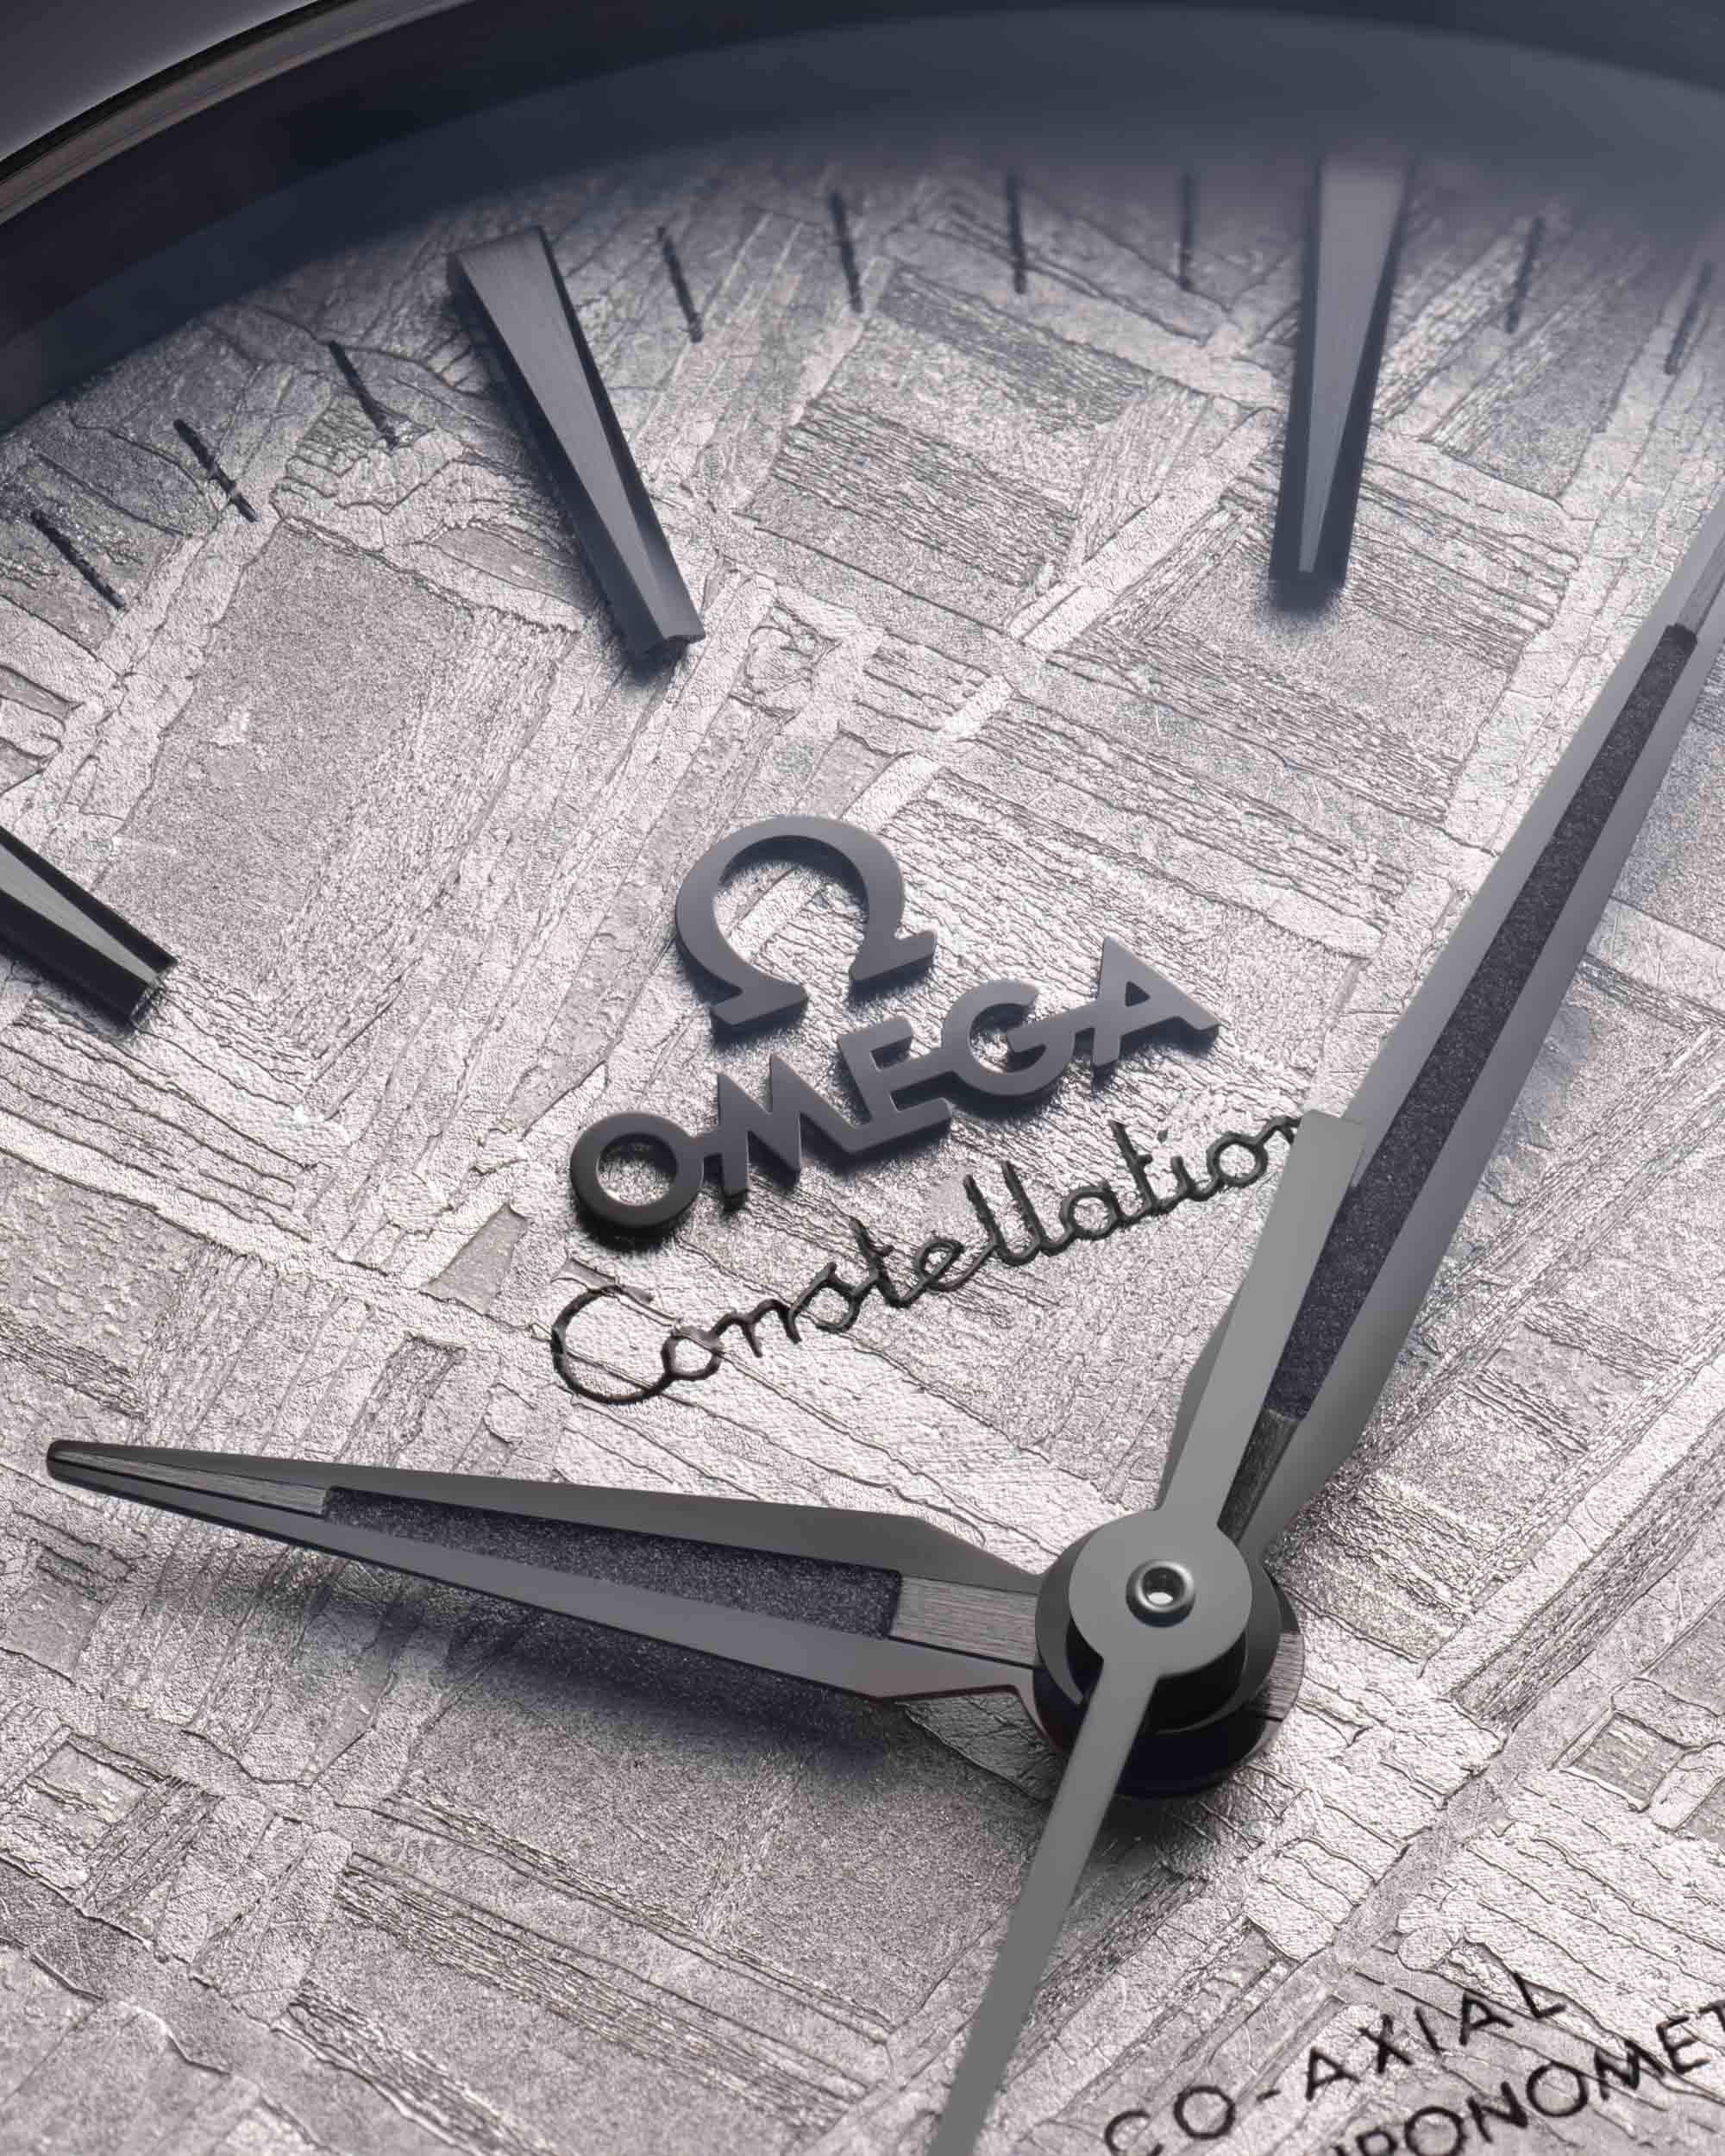 Новый выпуск: Часы Omega Constellation с метеоритным циферблатом